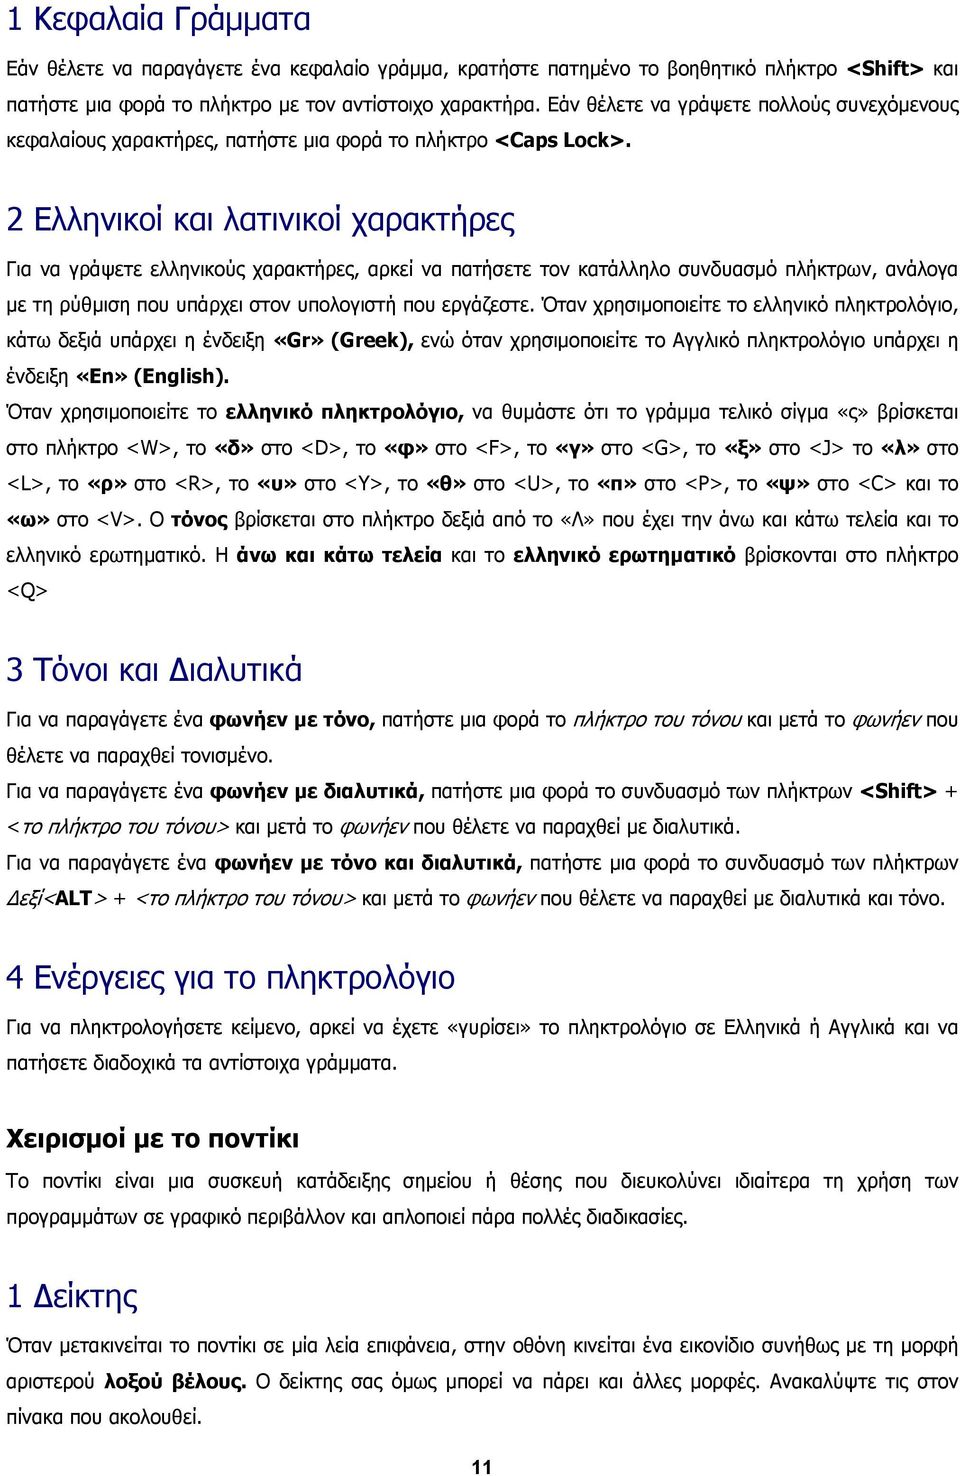 2 Ελληνικοί και λατινικοί χαρακτήρες Για να γράψετε ελληνικούς χαρακτήρες, αρκεί να πατήσετε τον κατάλληλο συνδυασµό πλήκτρων, ανάλογα µε τη ρύθµιση που υπάρχει στον υπολογιστή που εργάζεστε.